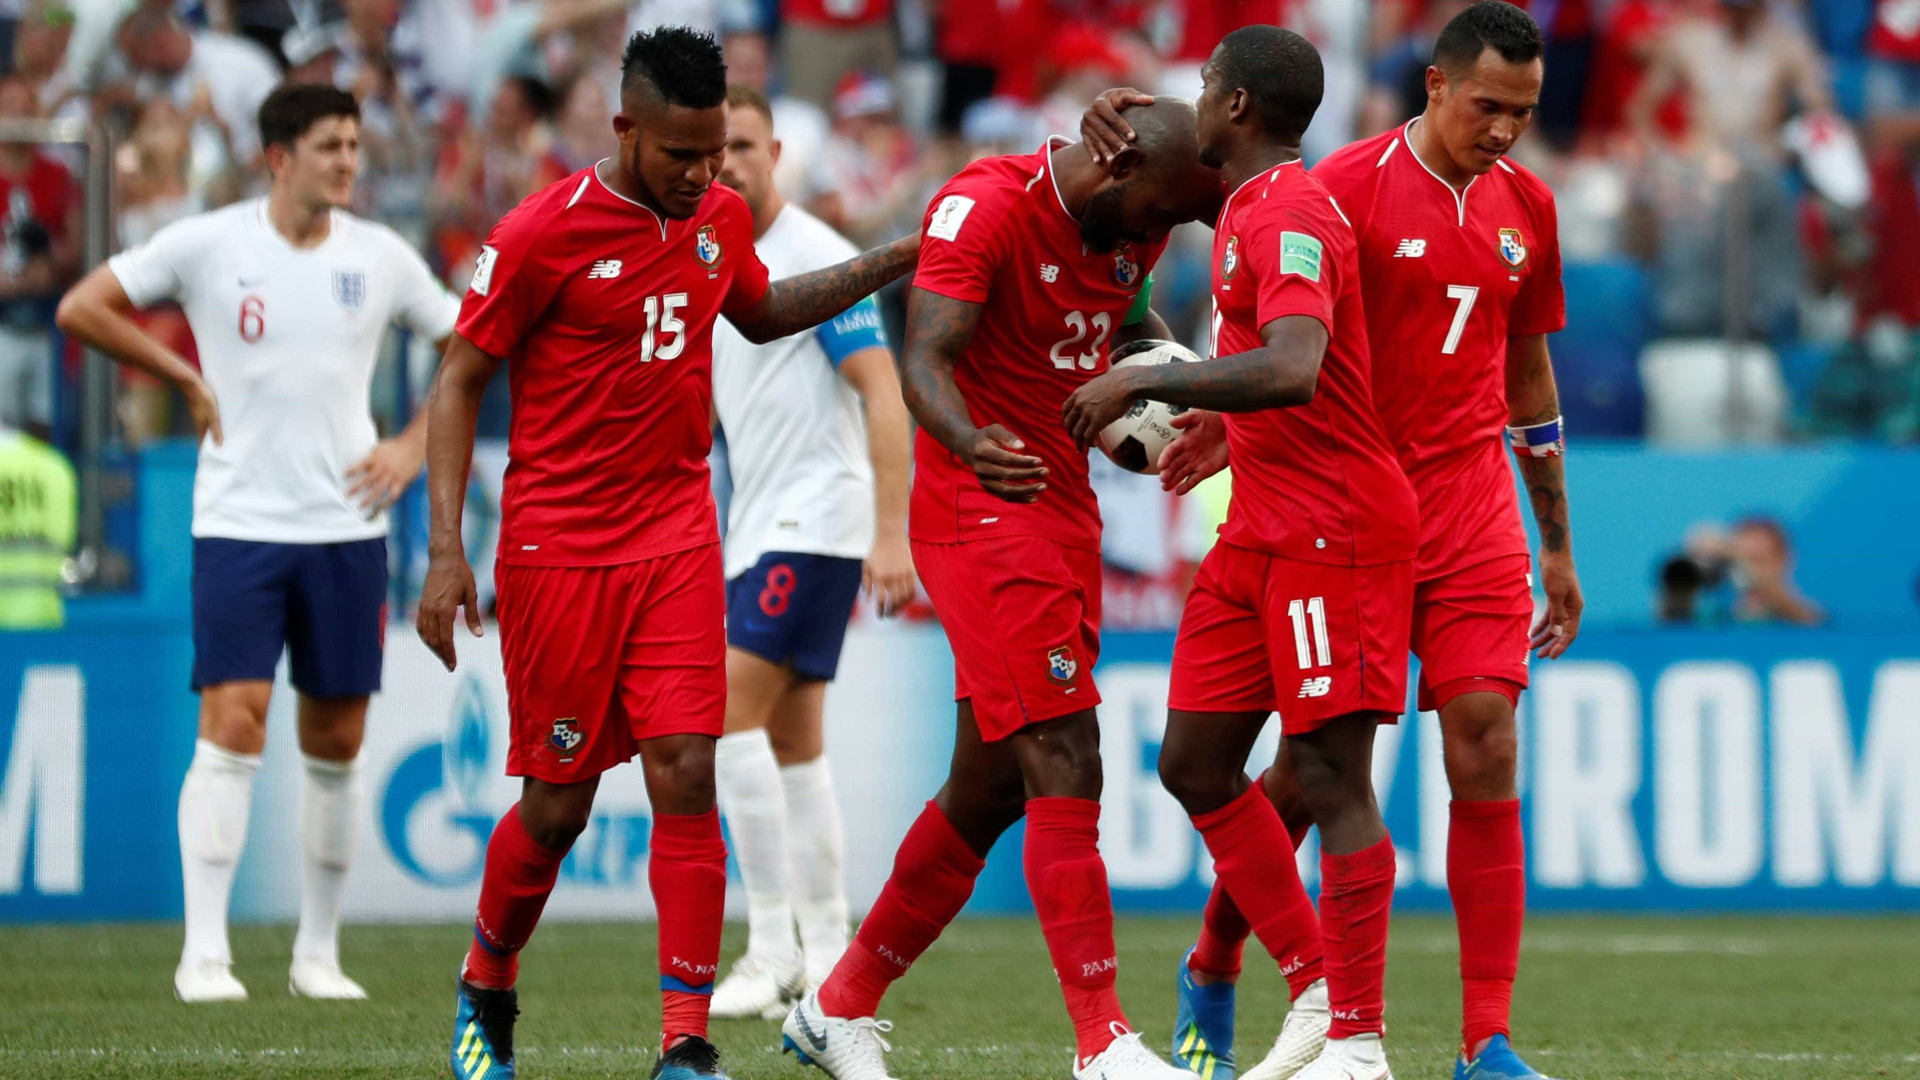 Panamá marca seu primeiro gol em copas, mas é goleado pela Inglaterra